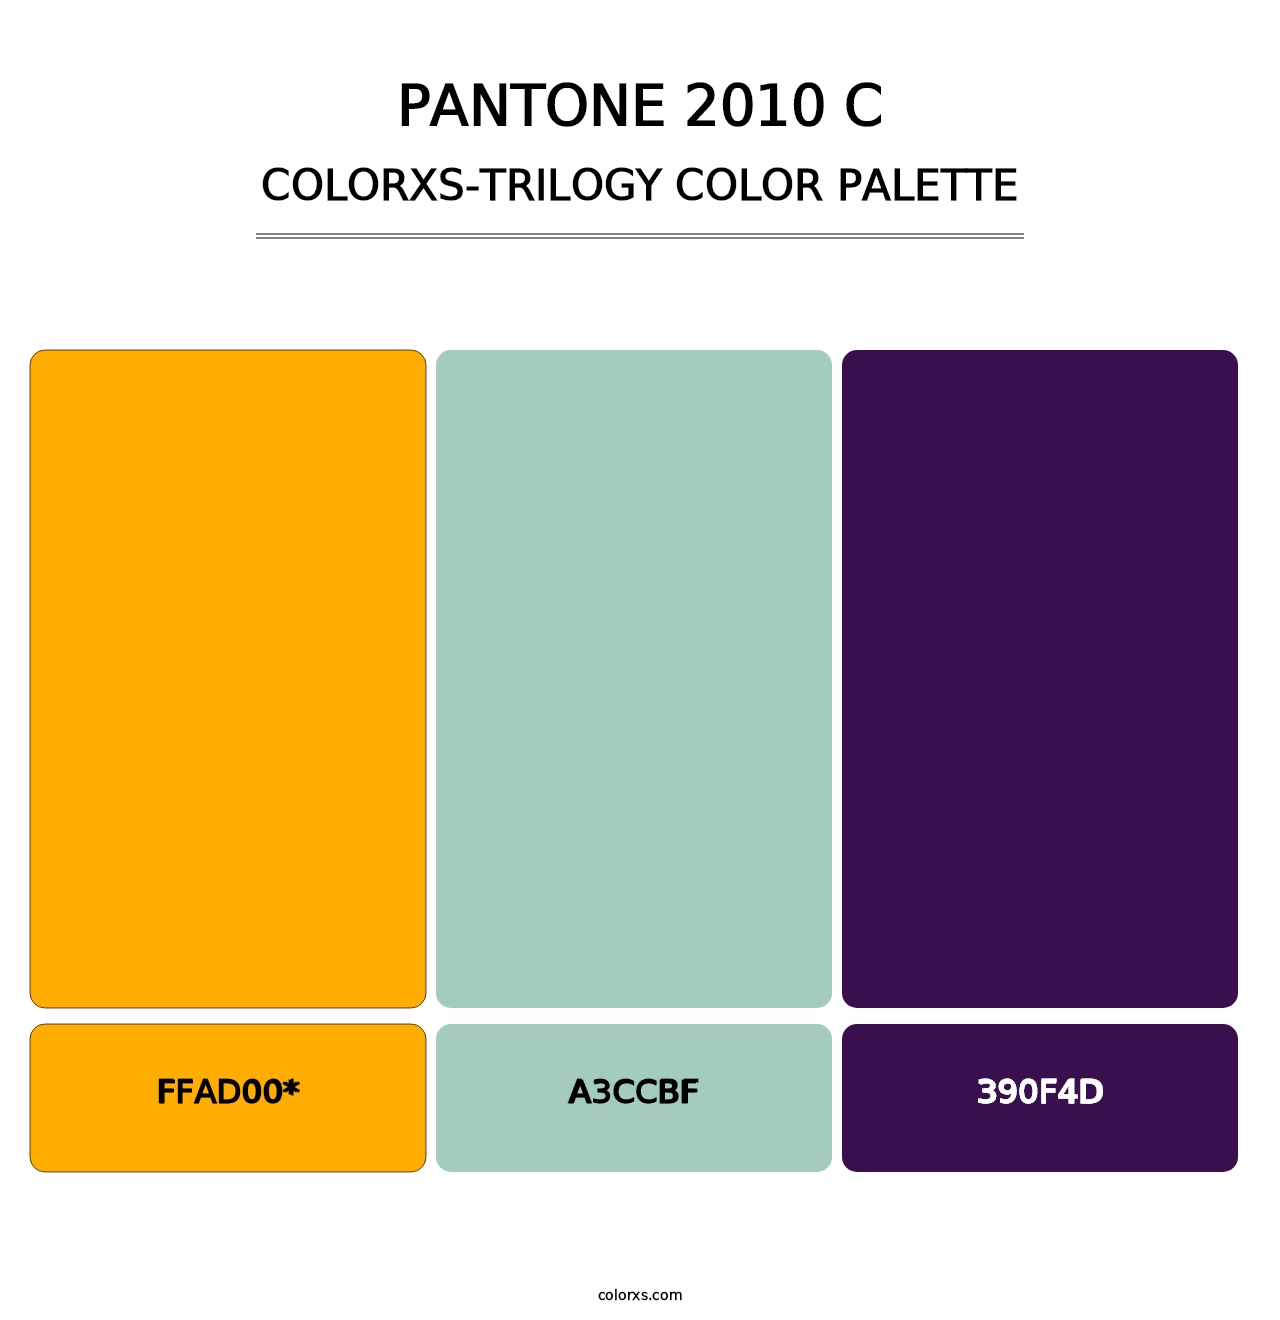 PANTONE 2010 C - Colorxs Trilogy Palette